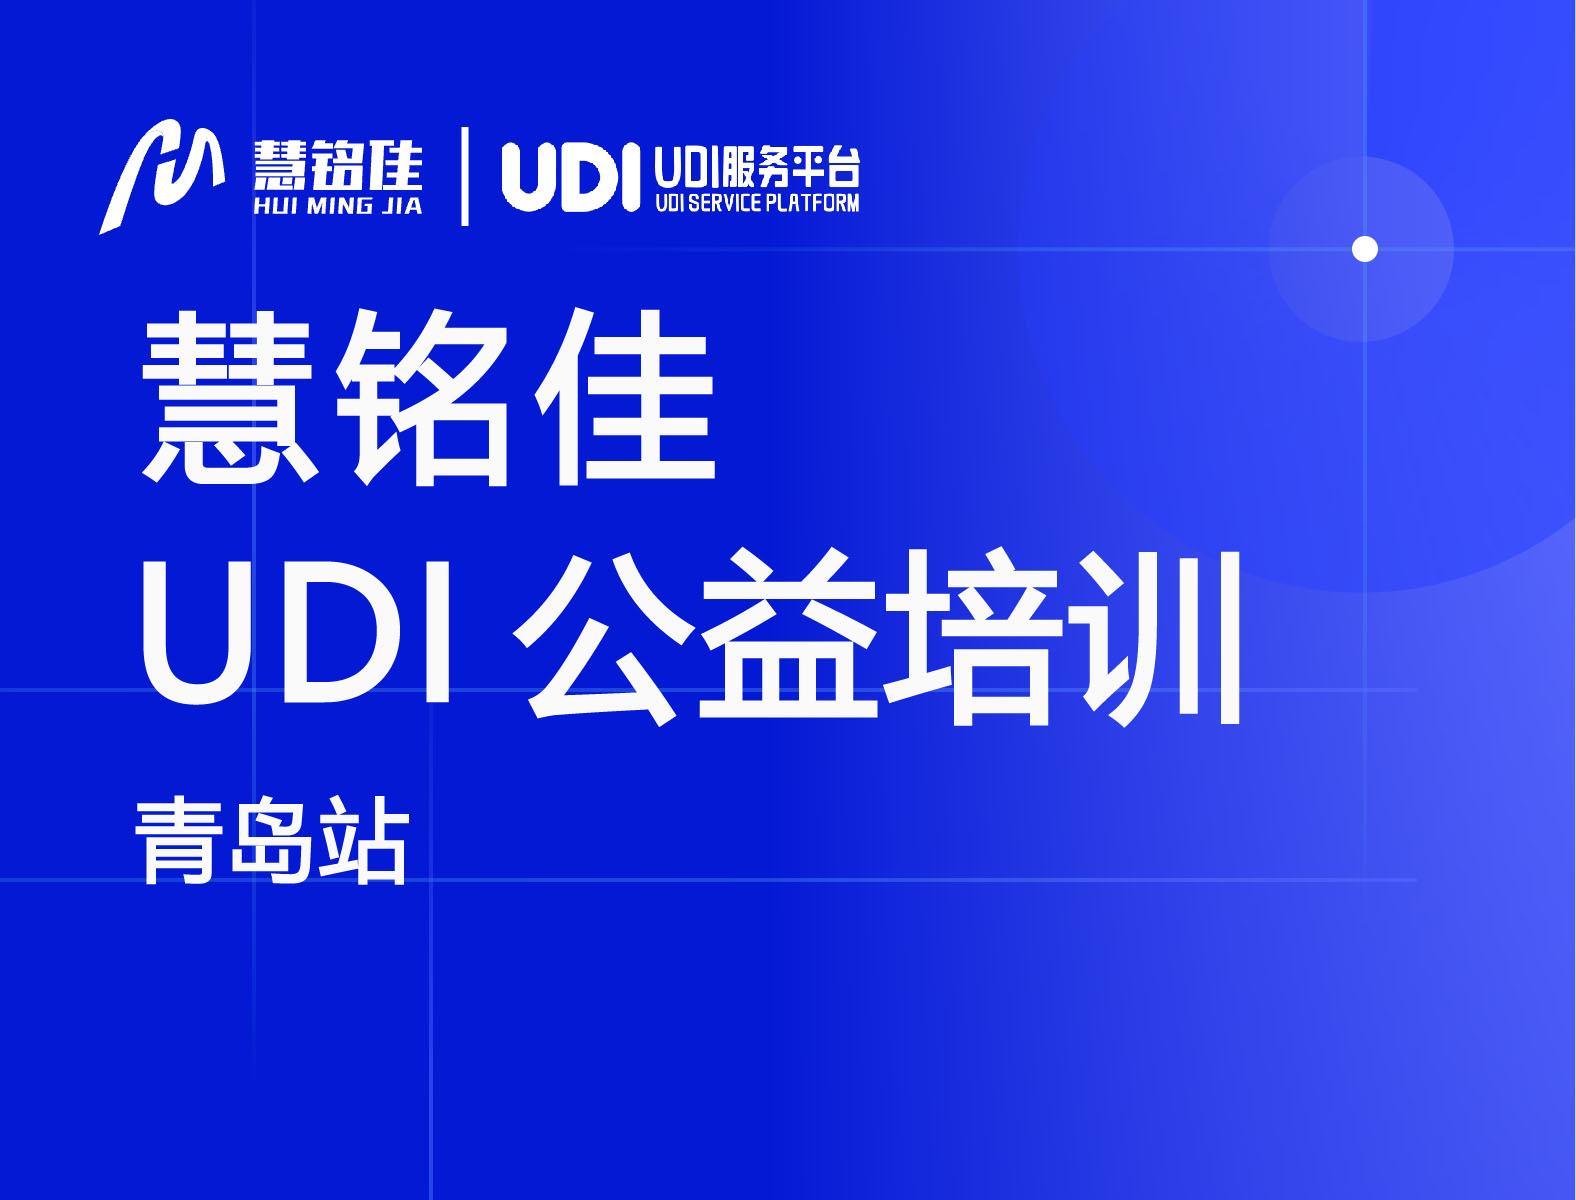 慧铭佳参与中国物品编码中心UDI公益培训（青岛站）协办工作，助力指导企业实施UDI